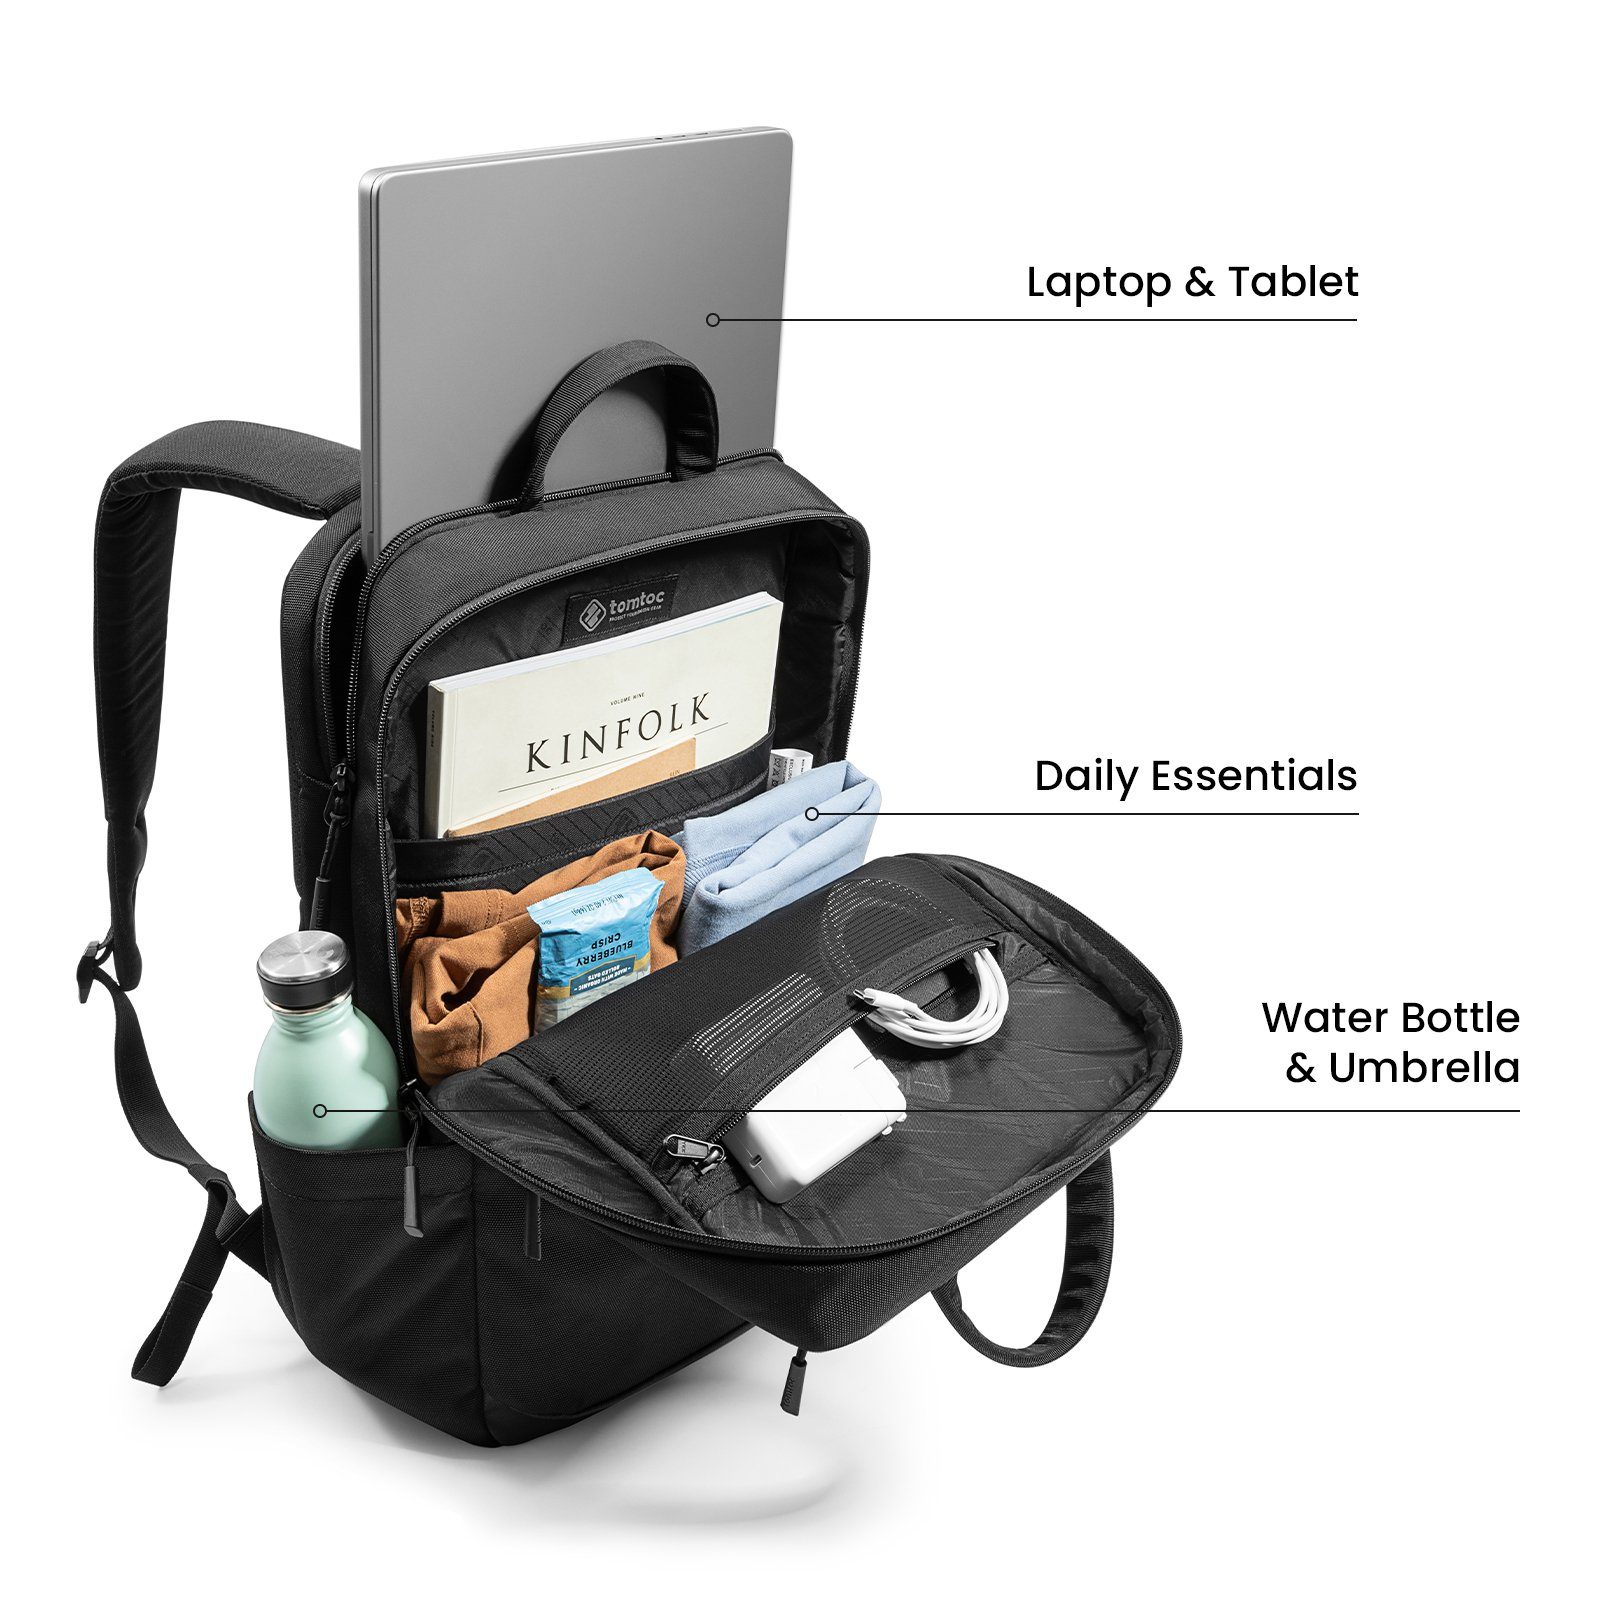 Ihres Rucksack das Tagesrucksack tomtoc 15,6 Laptop Aufladen ermöglicht Zoll PowerBank-Tasche 22L, Büro, Eine Laptoprucksack für Business, integrierte Handys